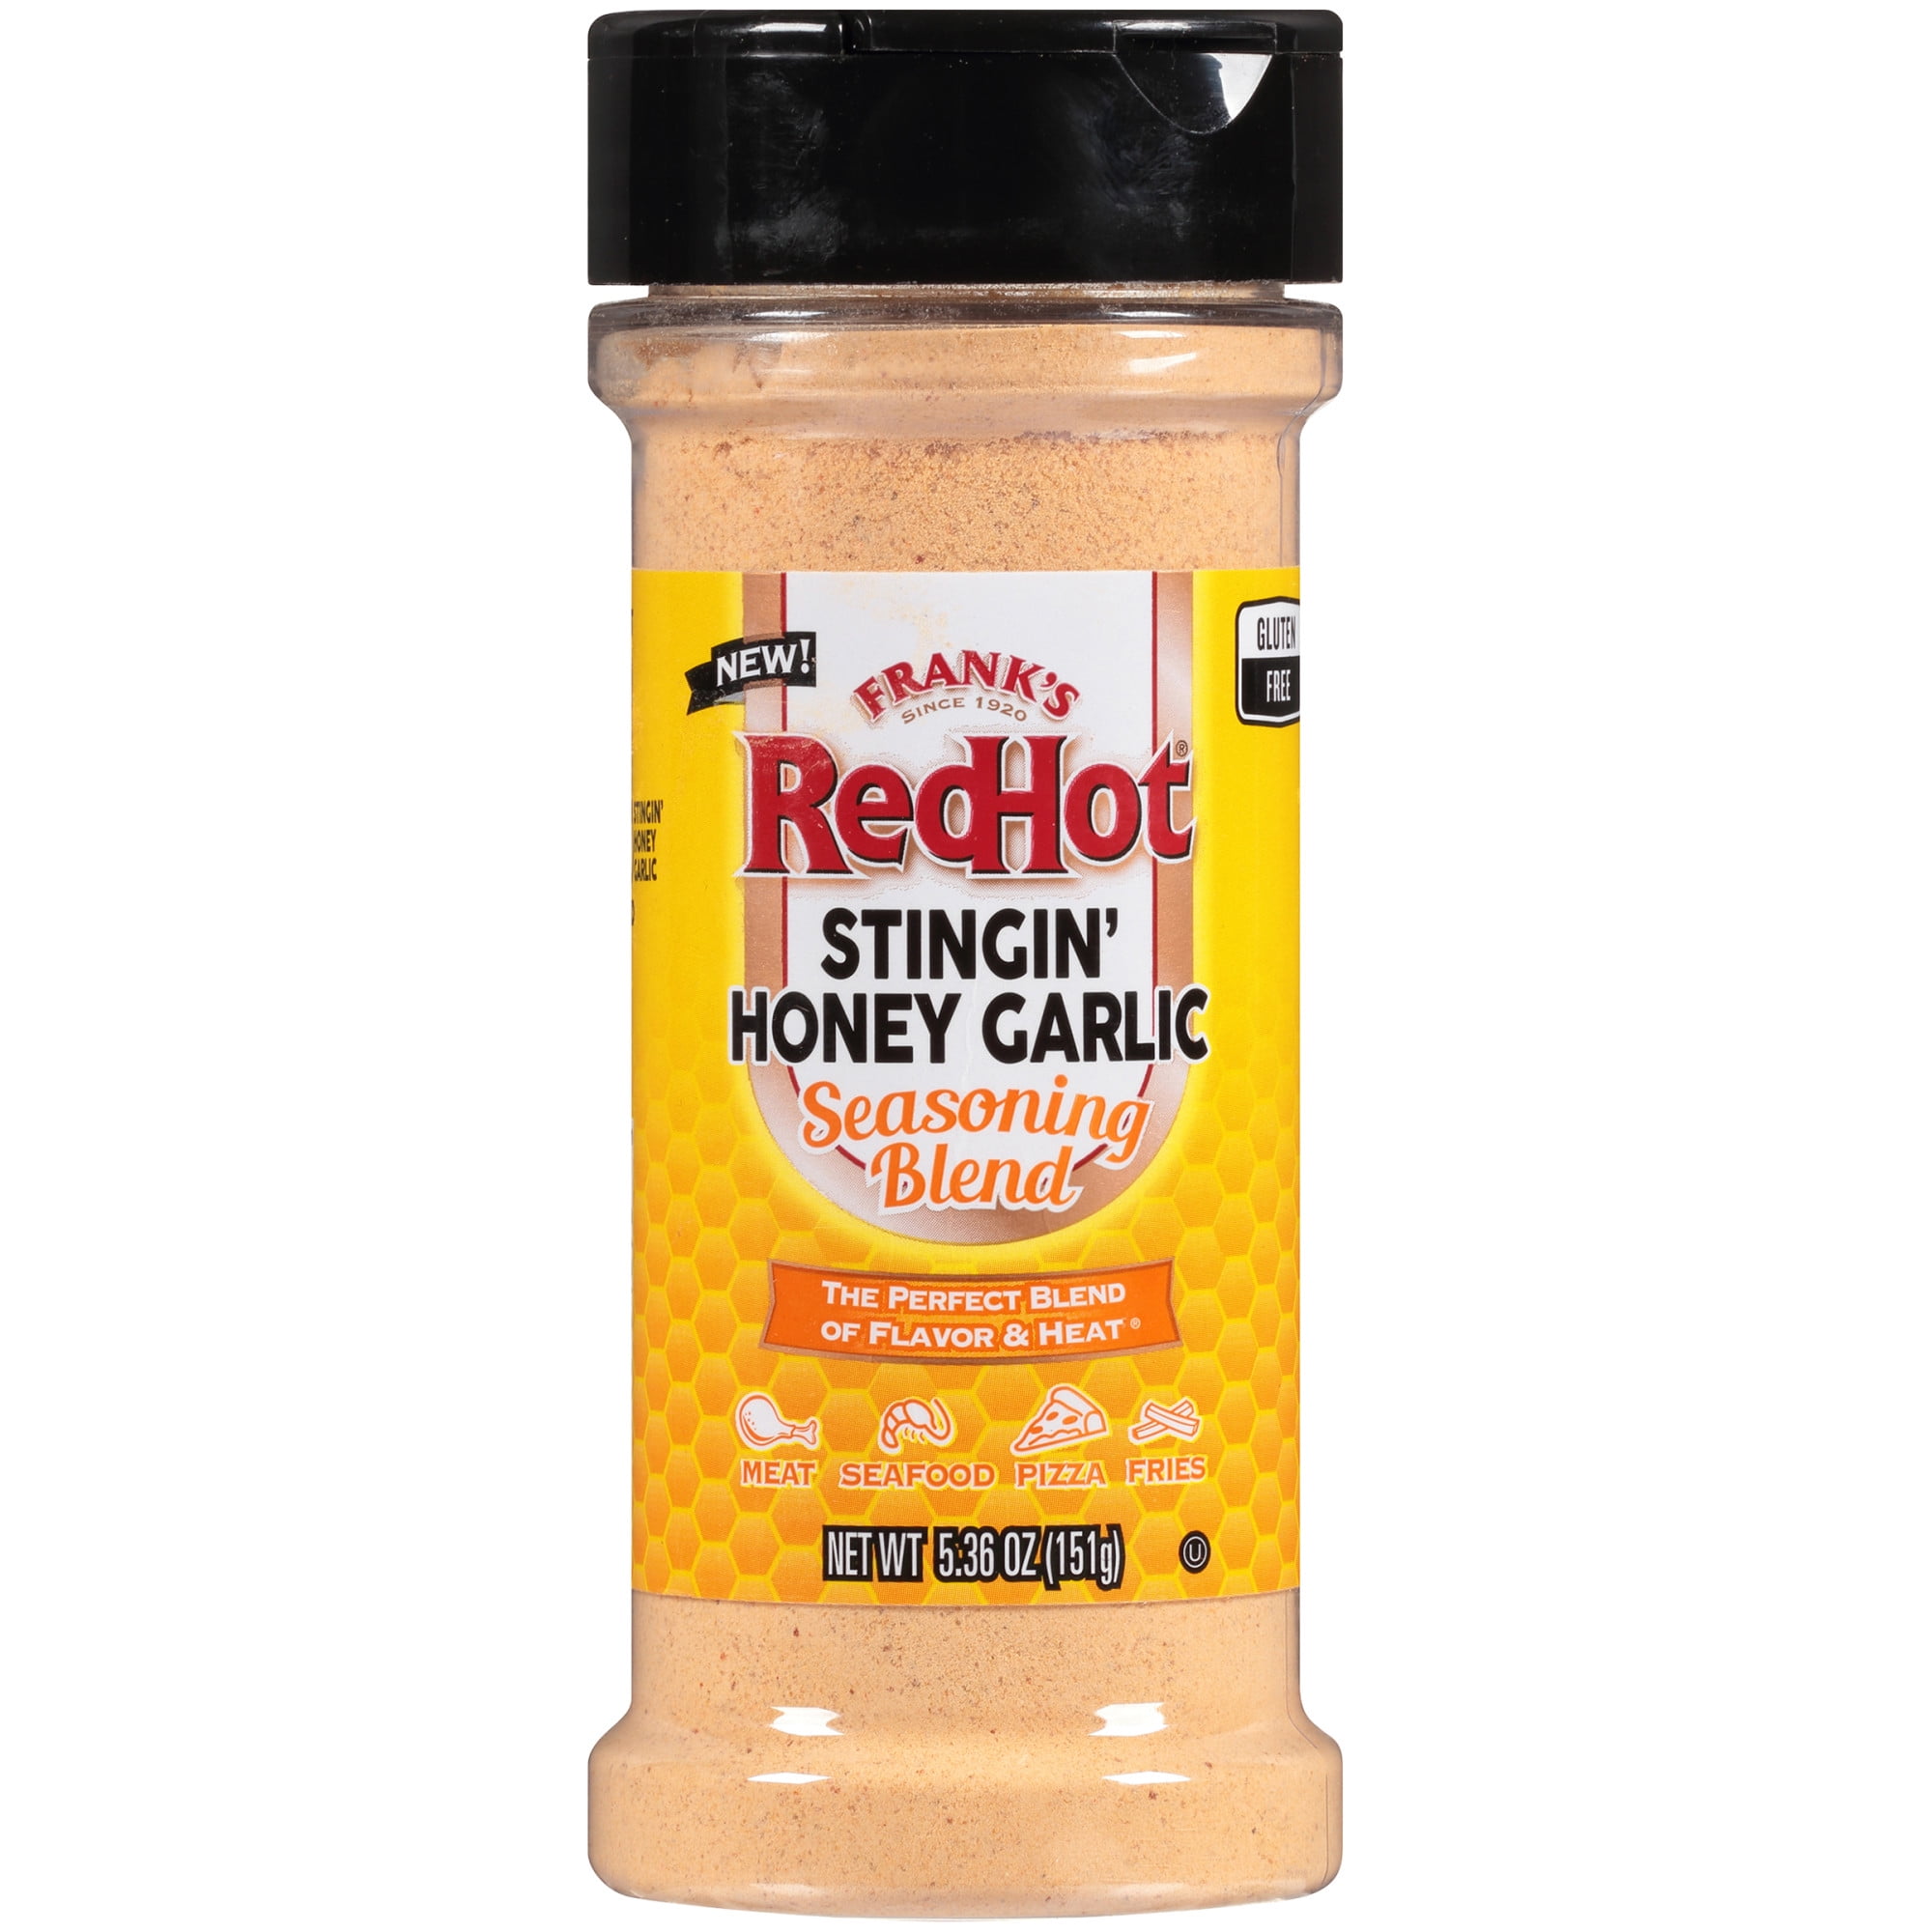 Franks Redhot Seasoning Blend, Stingin' Honey Garlic - 5.36 oz